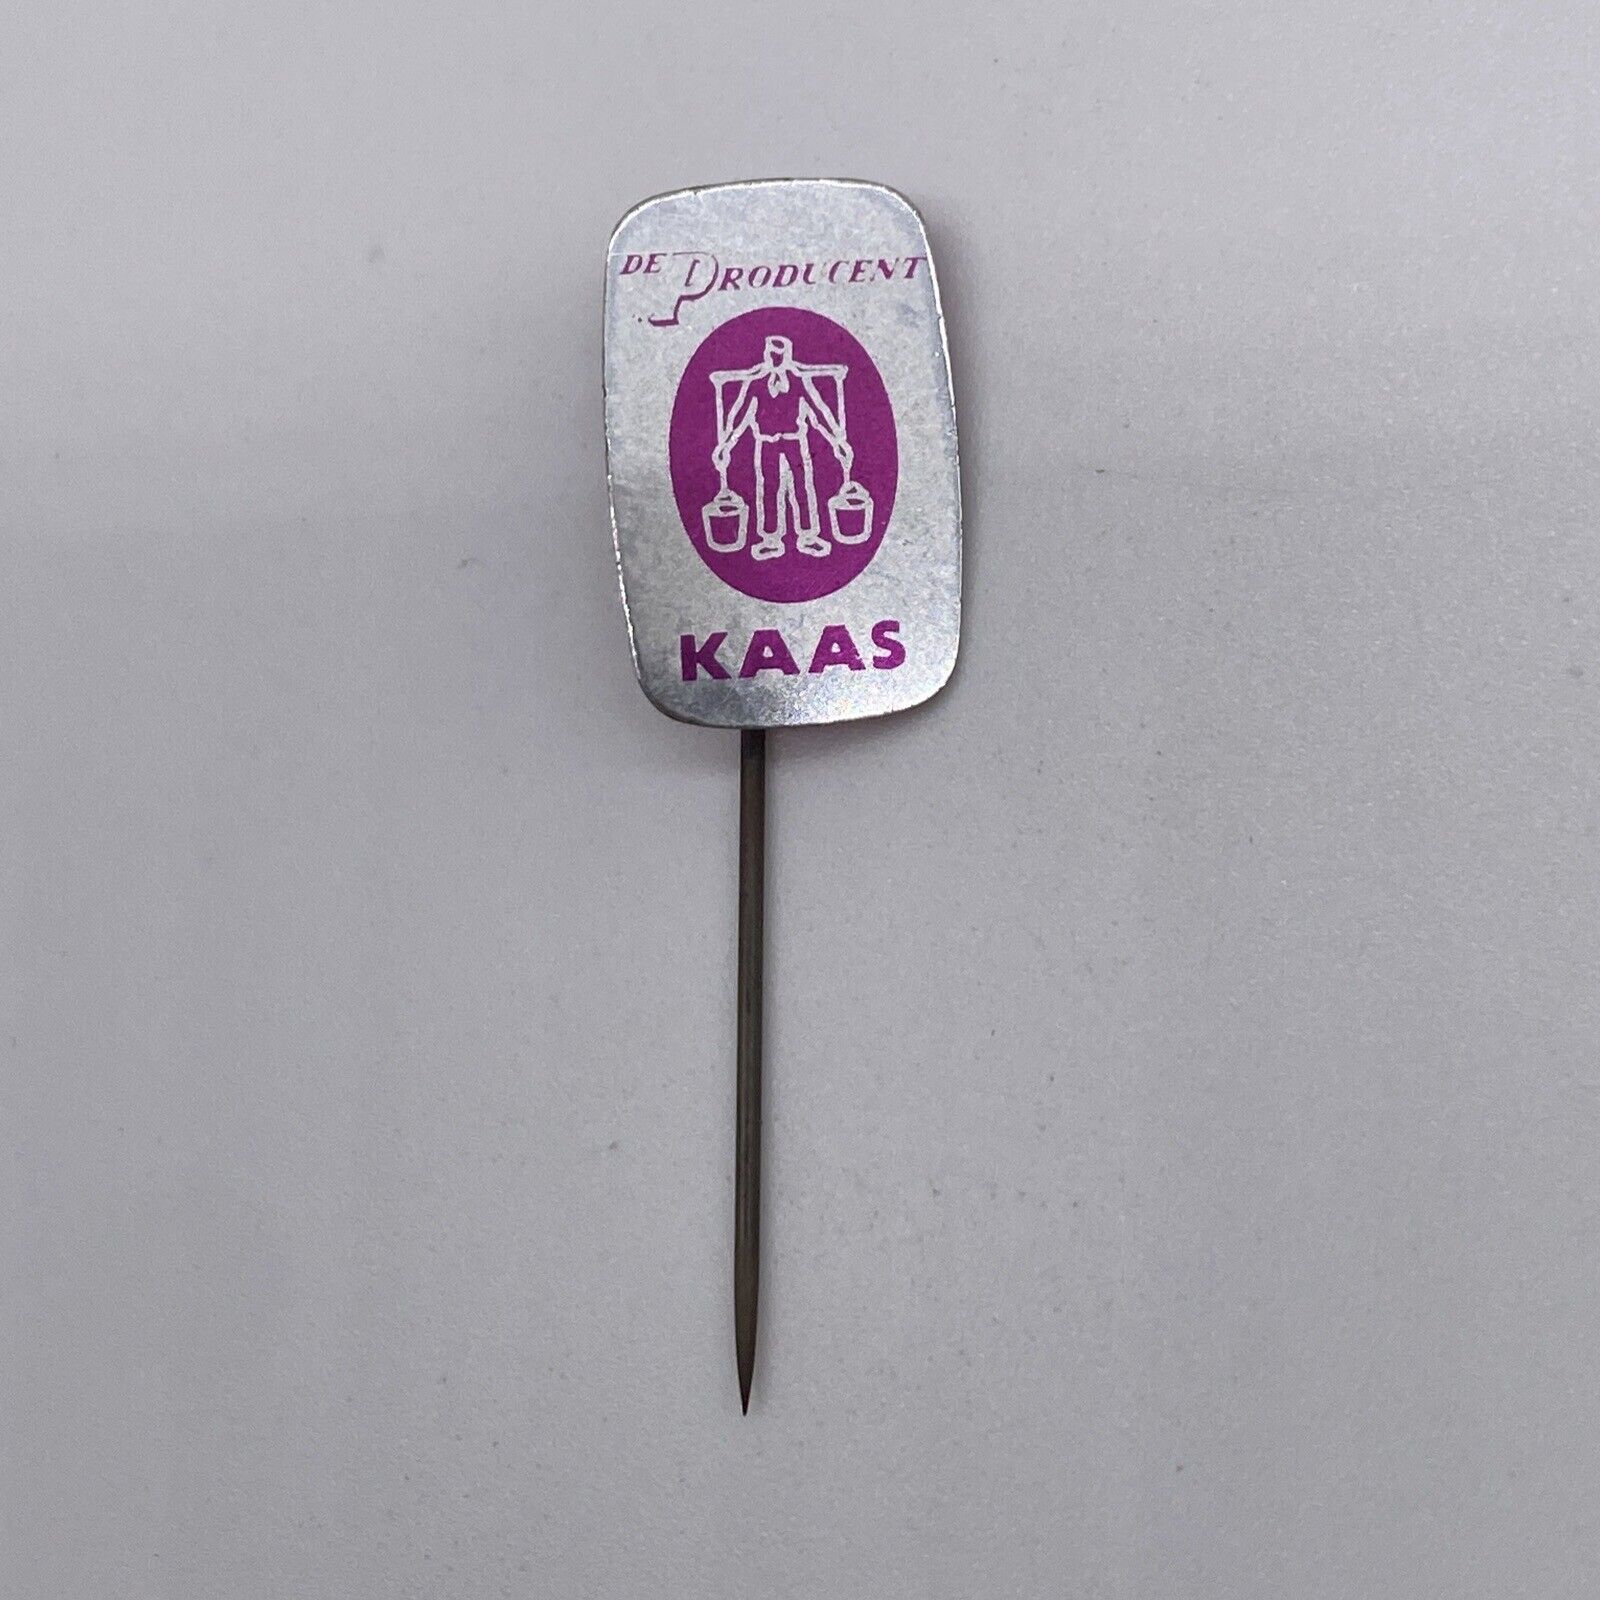 Vintage De Producent Kaas Advertising Hat Lapel Stick Pin